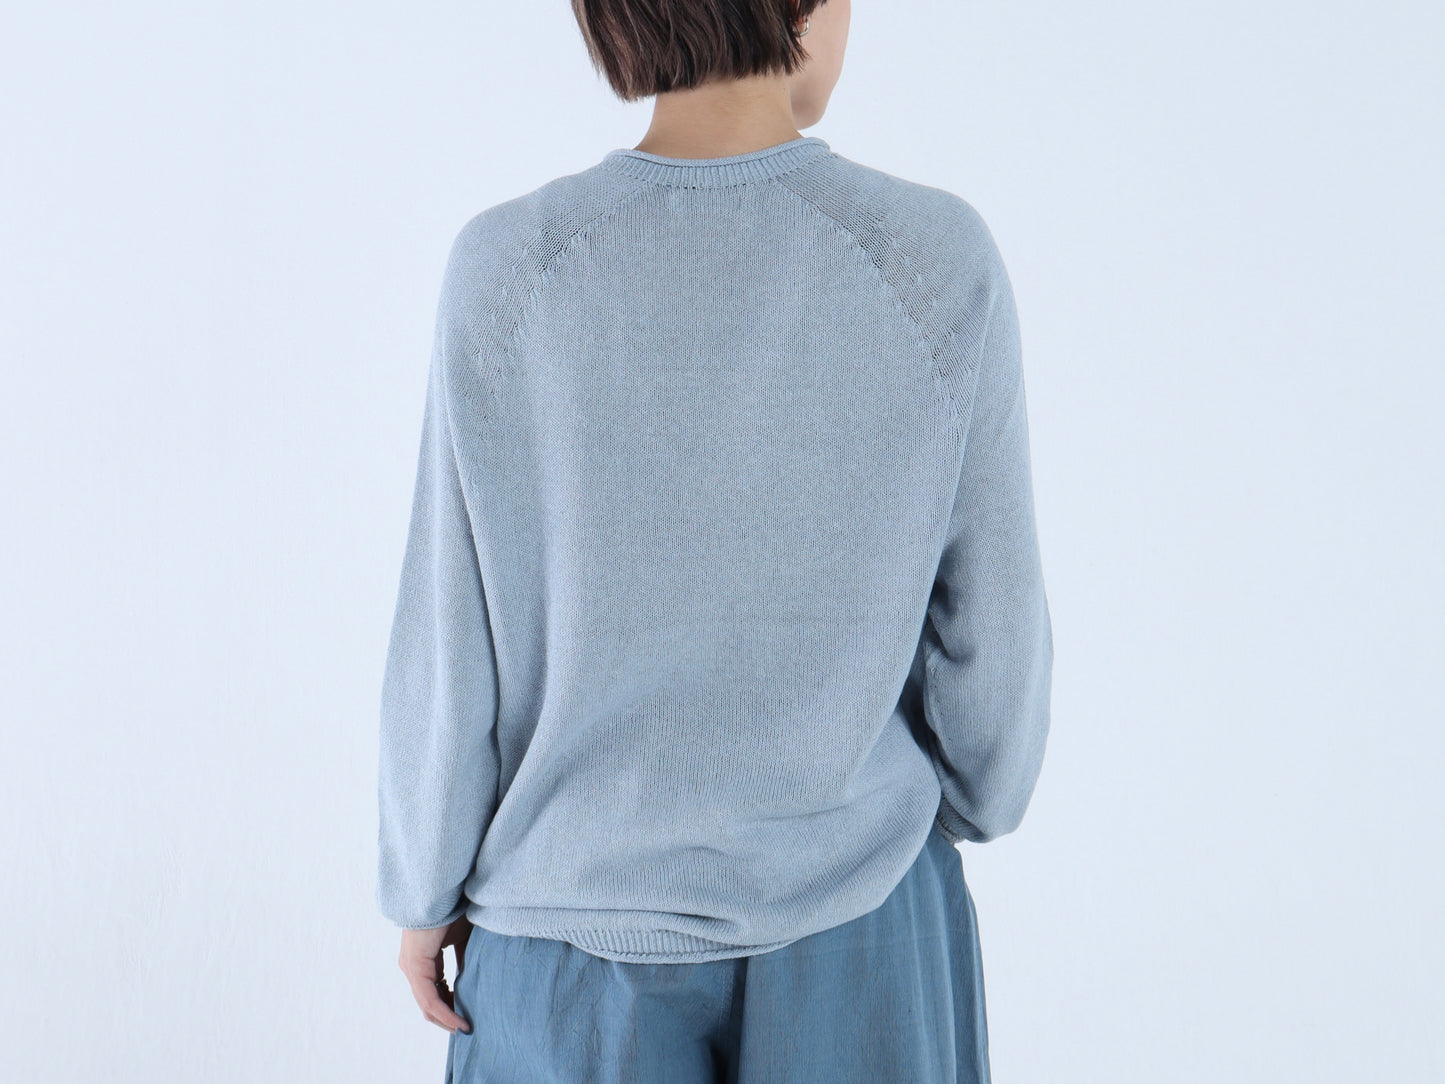 綿強撚糸 カーブセーター